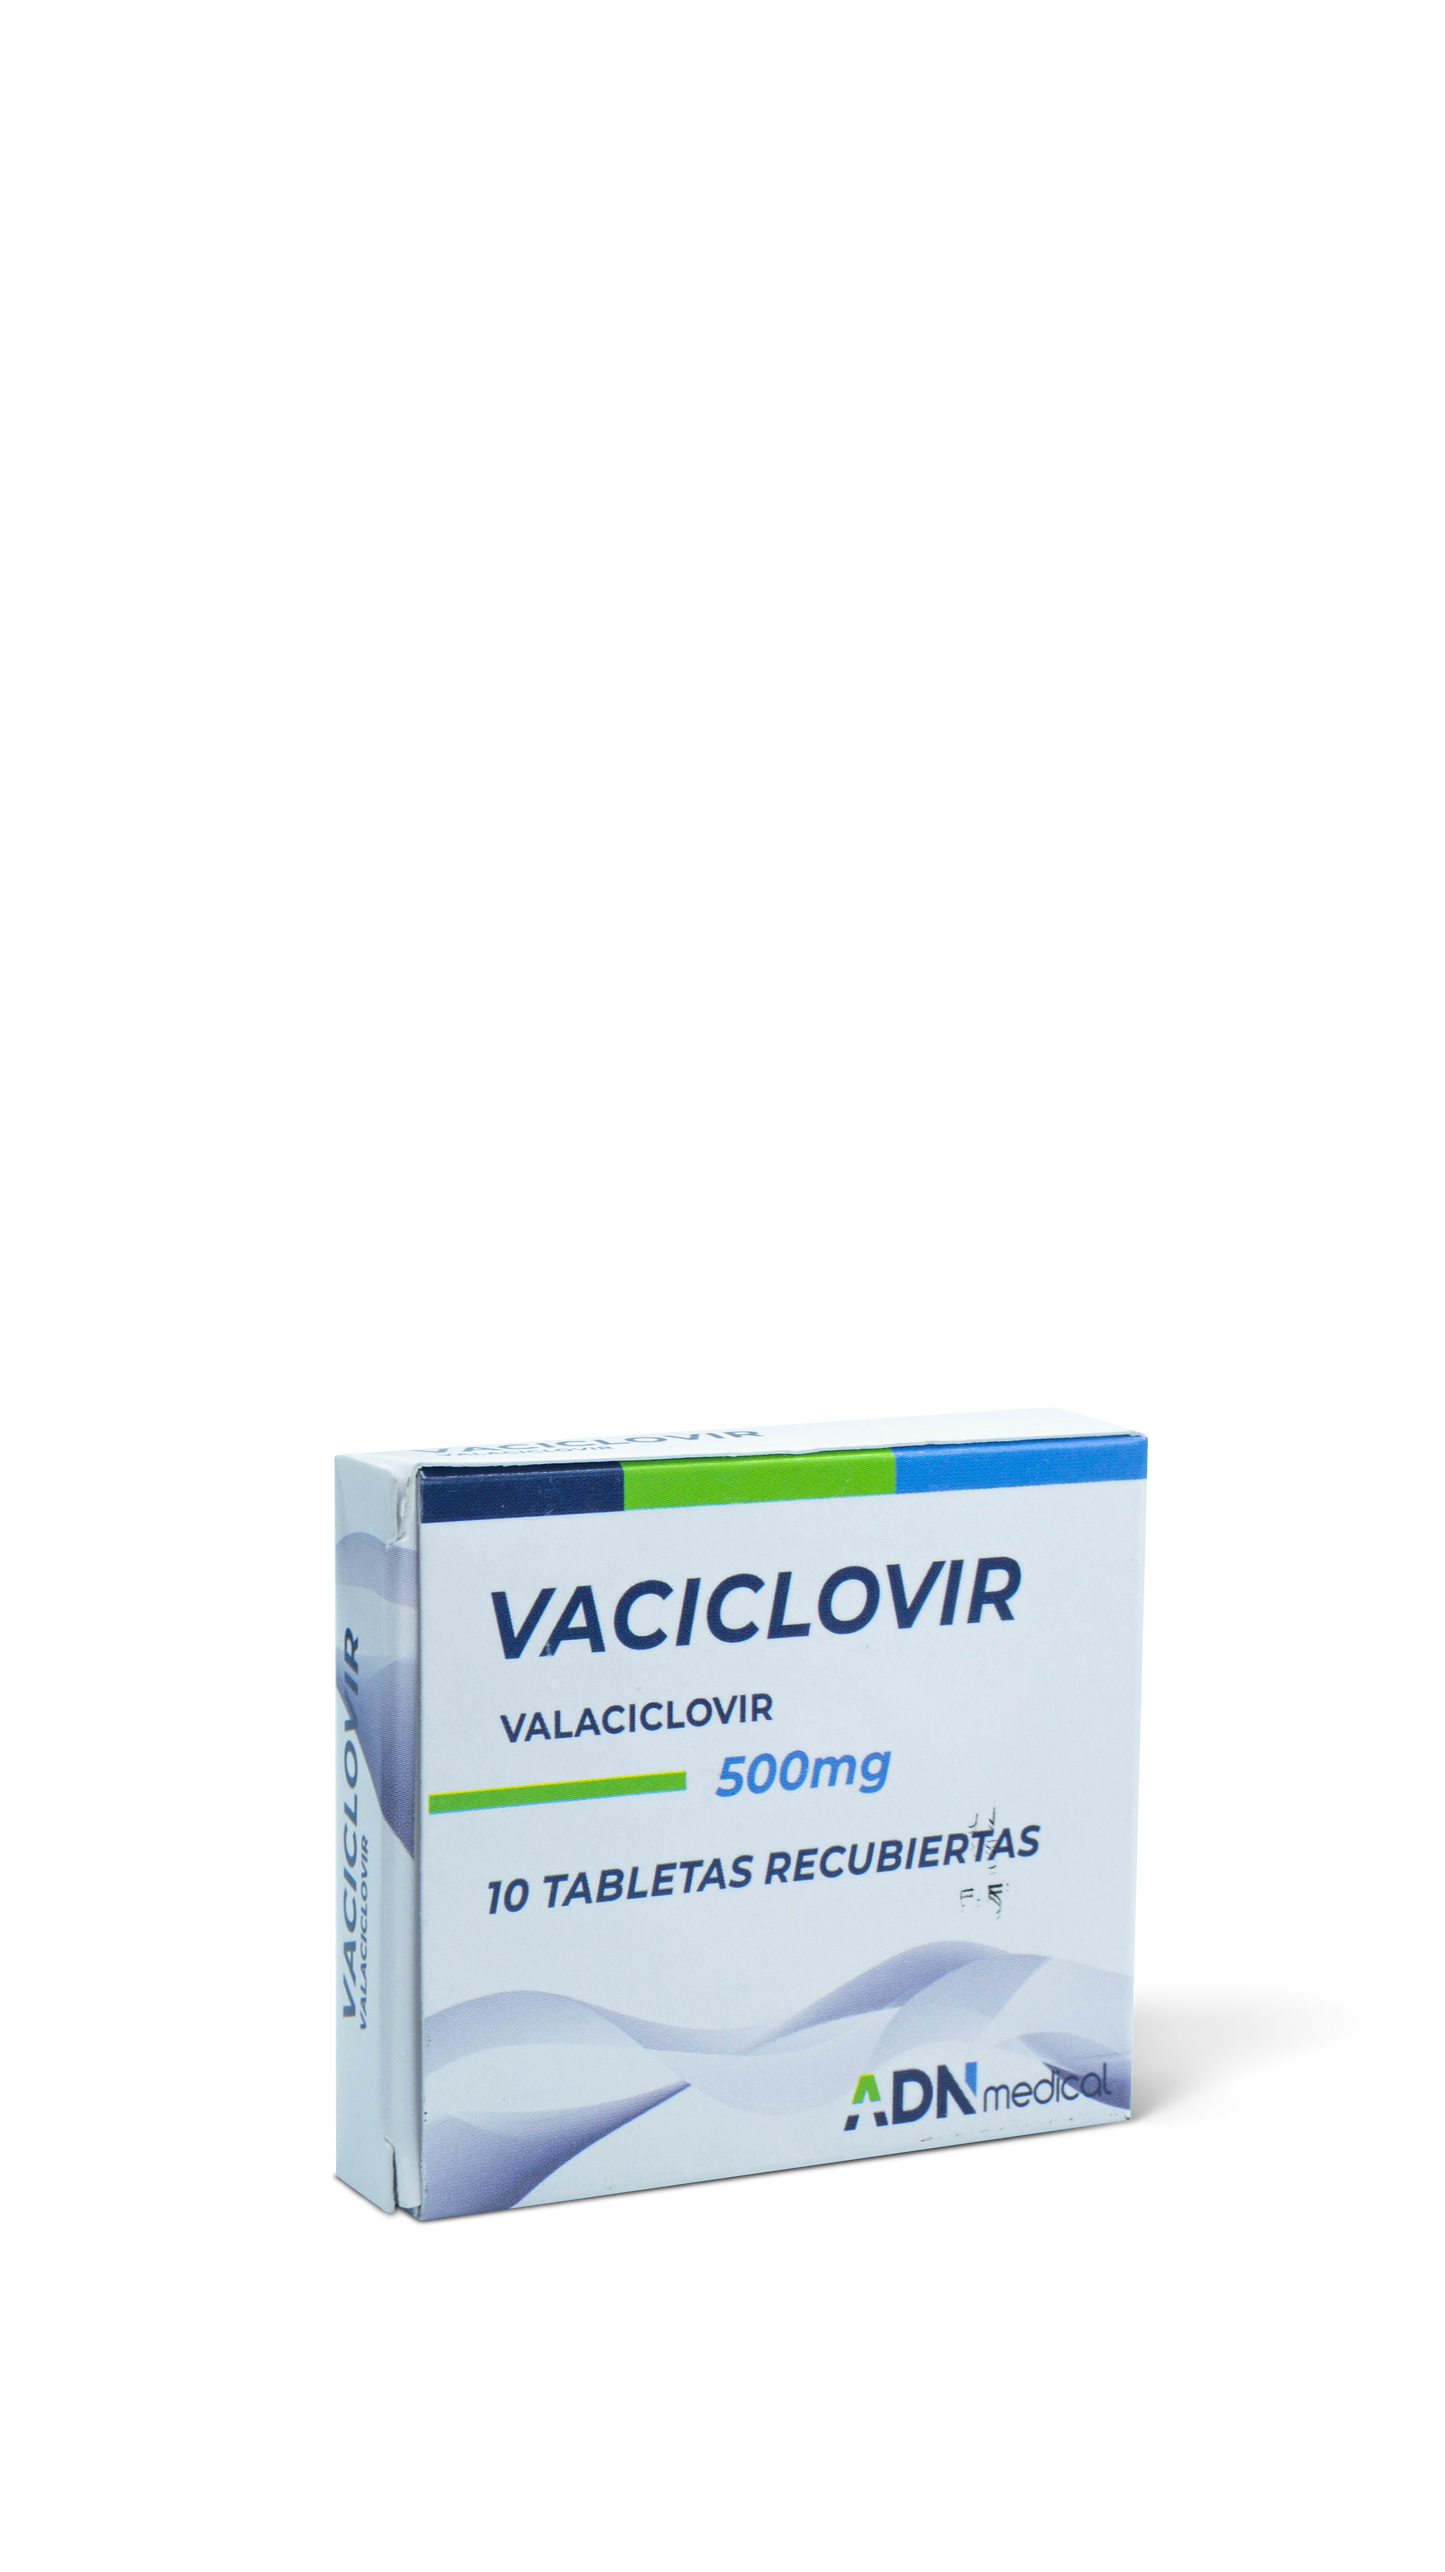 Valaciclovir 10 tabletas 500mg